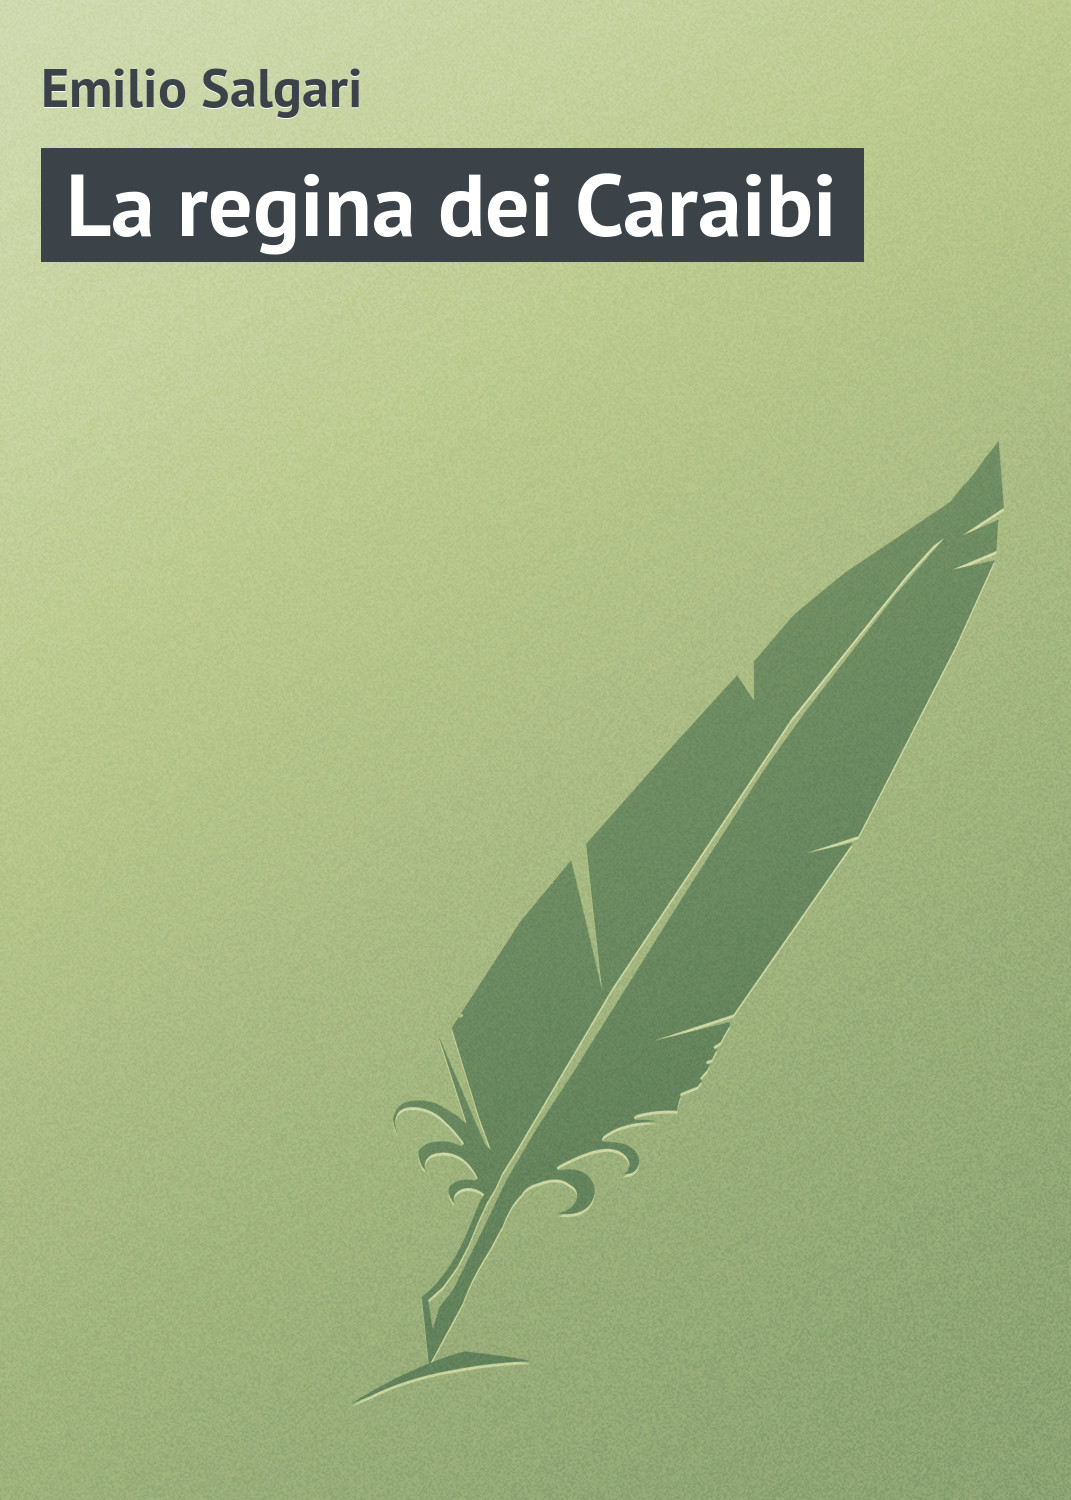 Книга La regina dei Caraibi из серии , созданная Emilio Salgari, может относится к жанру Зарубежная старинная литература, Зарубежная классика. Стоимость электронной книги La regina dei Caraibi с идентификатором 21104150 составляет 5.99 руб.